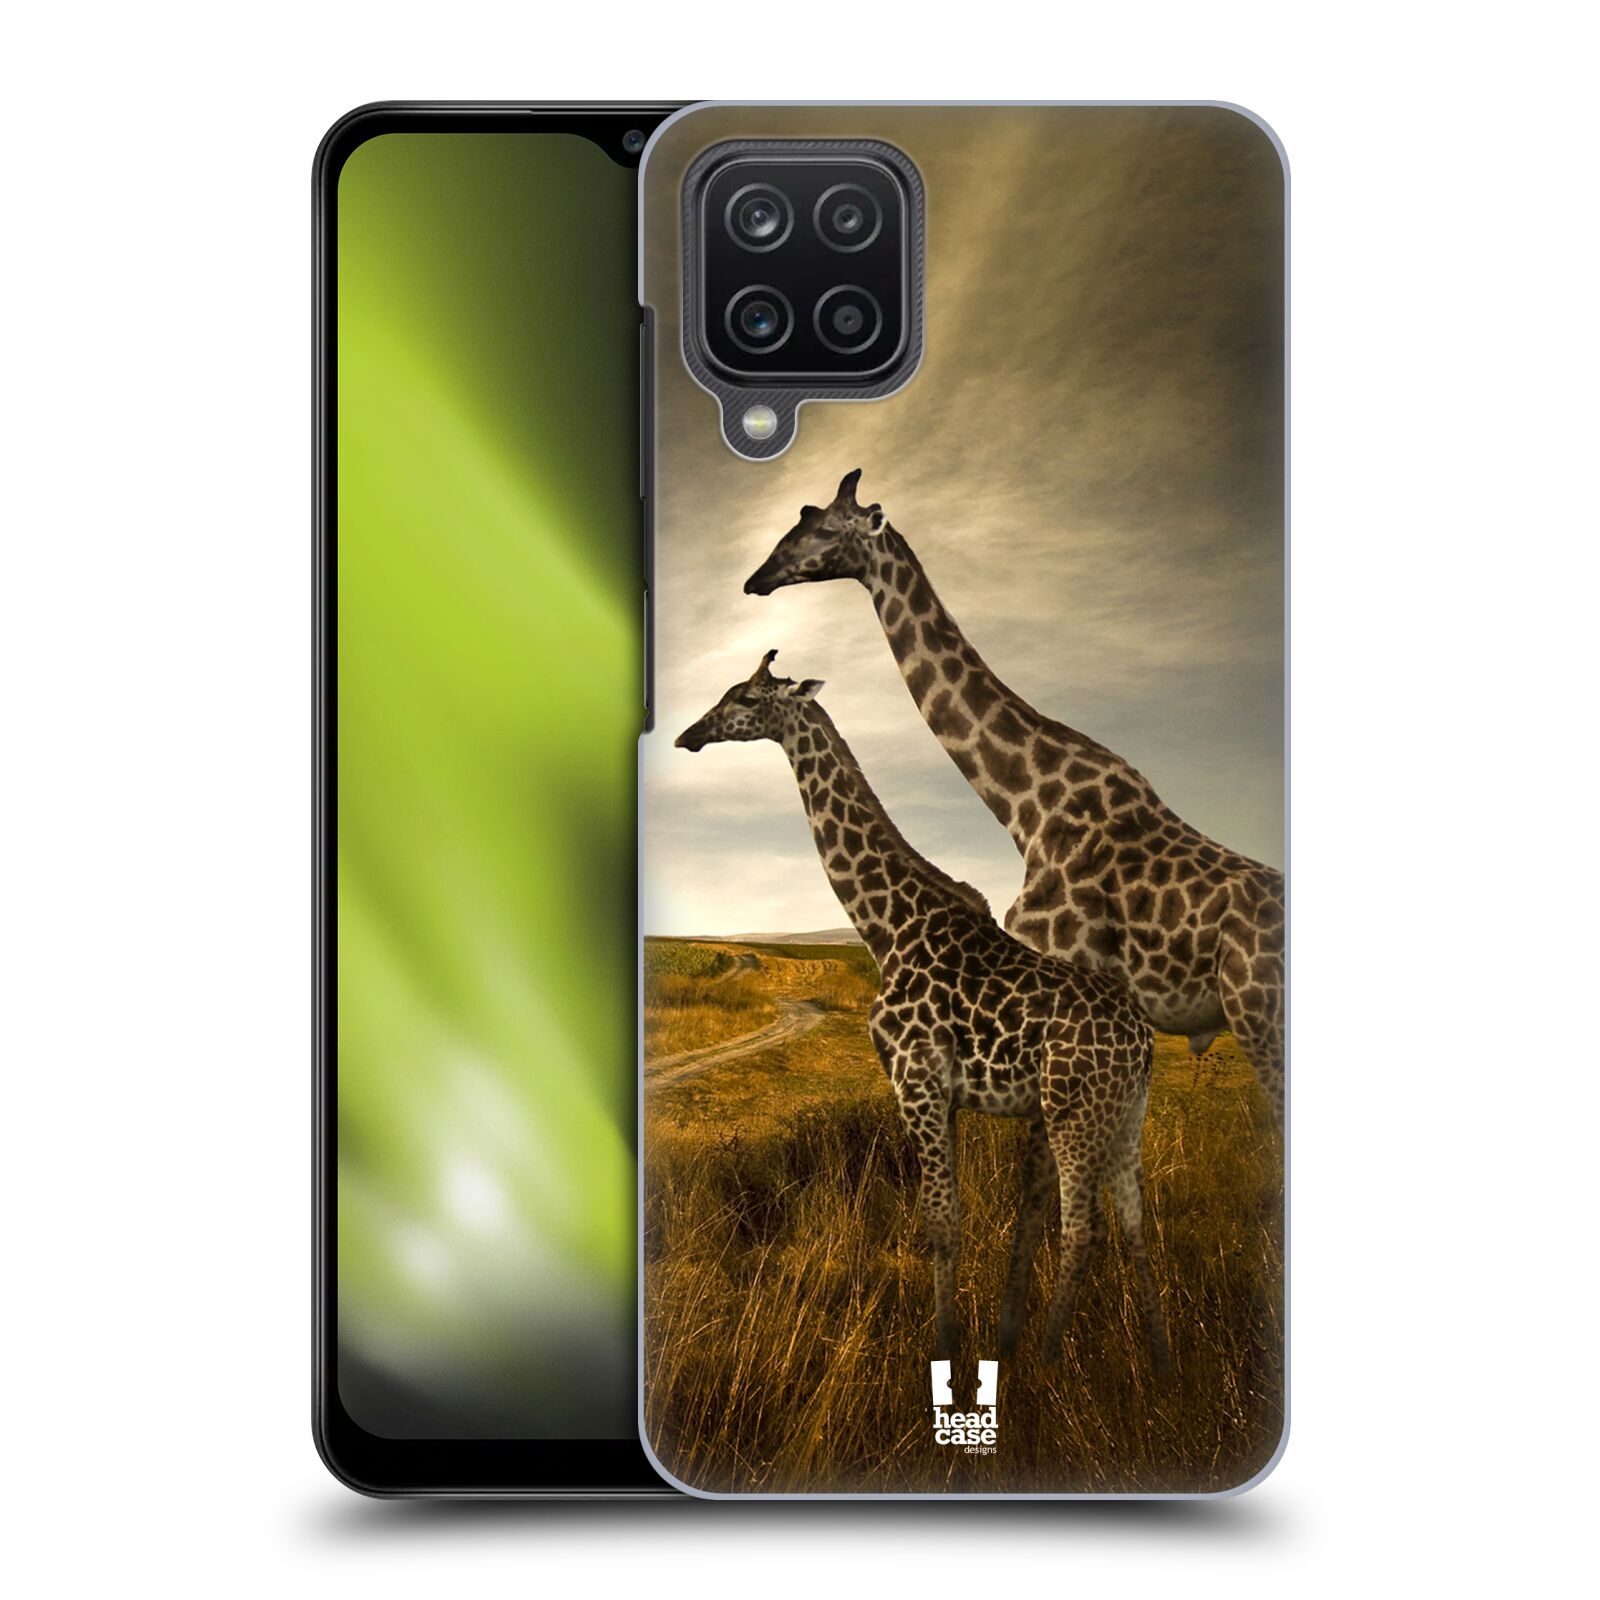 Zadní obal pro mobil Samsung Galaxy A12 - HEAD CASE - Svět zvířat žirafy